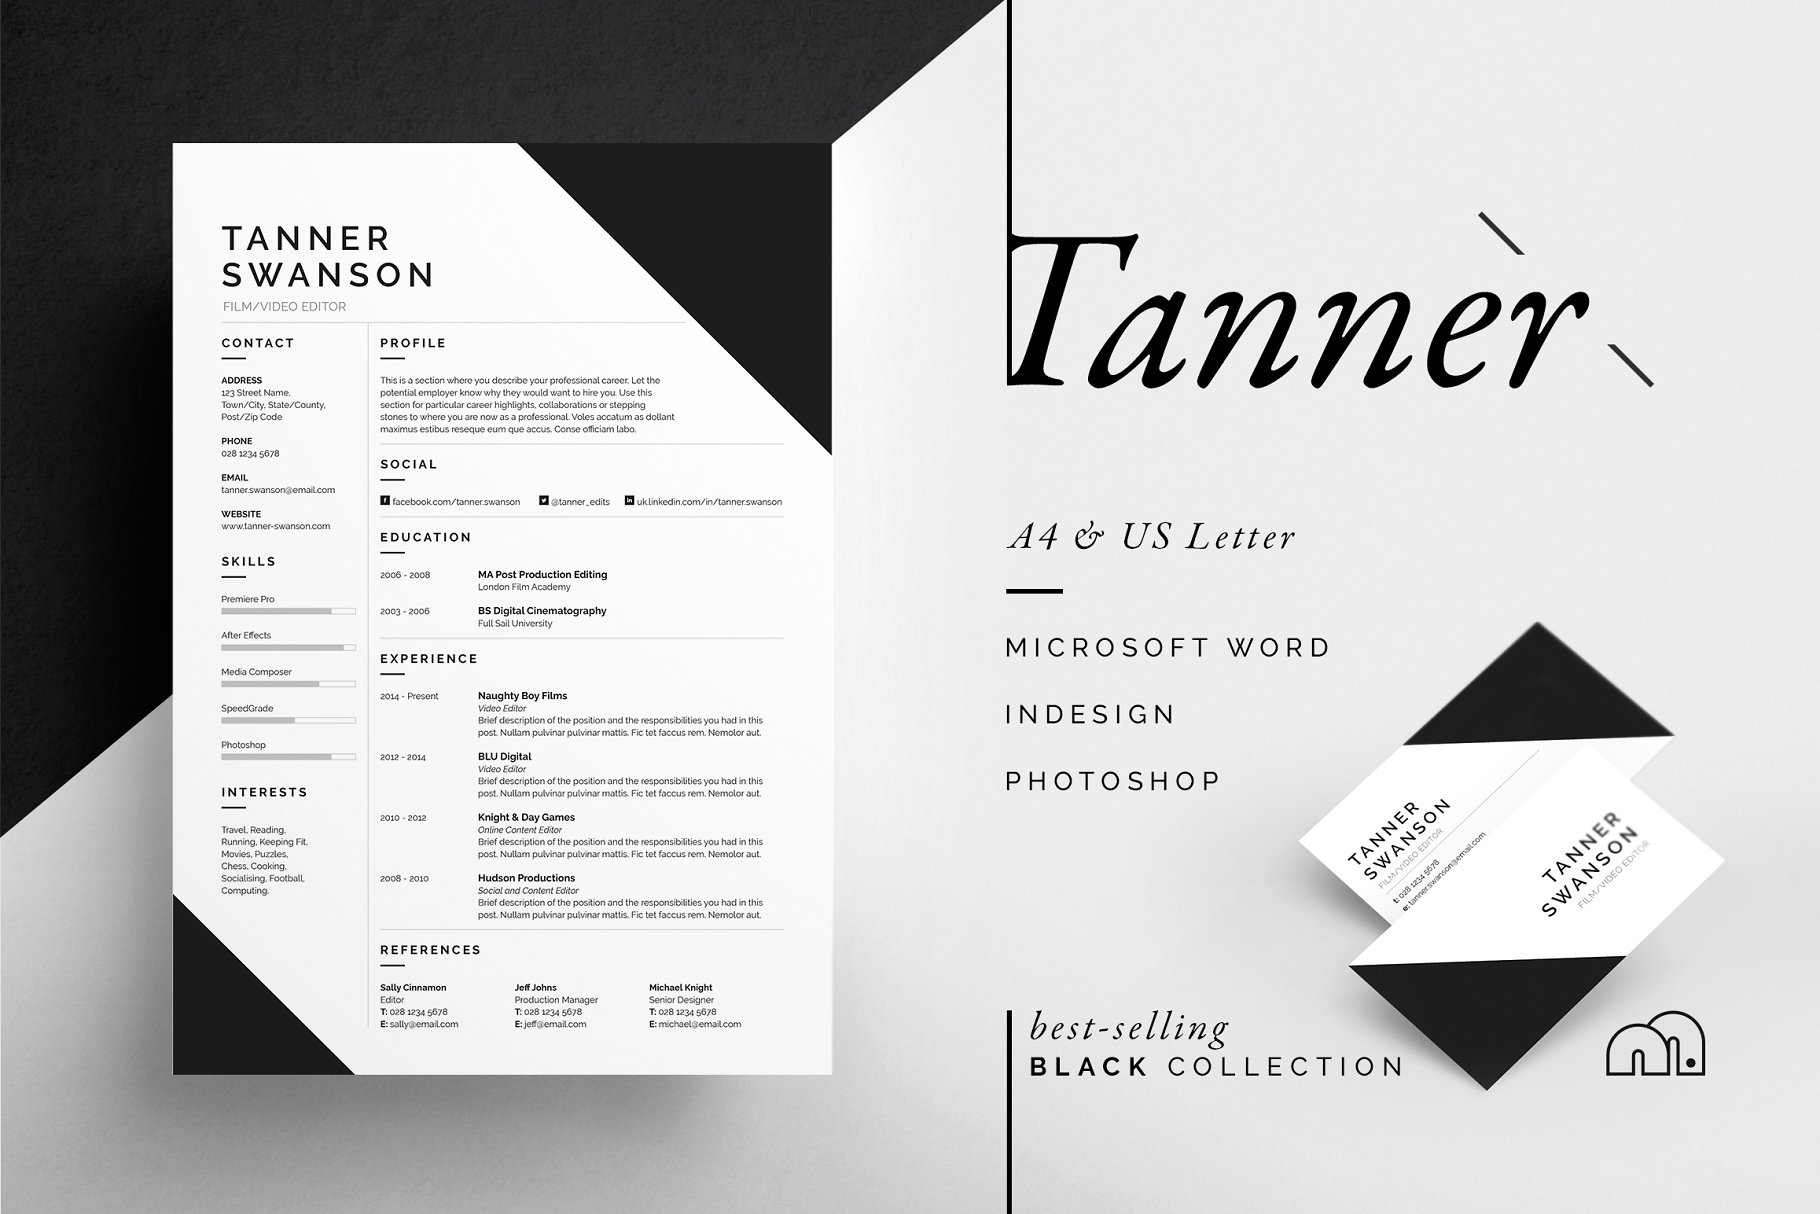 专业且酷炫的简历模板 Tanner – Resume/CV插图